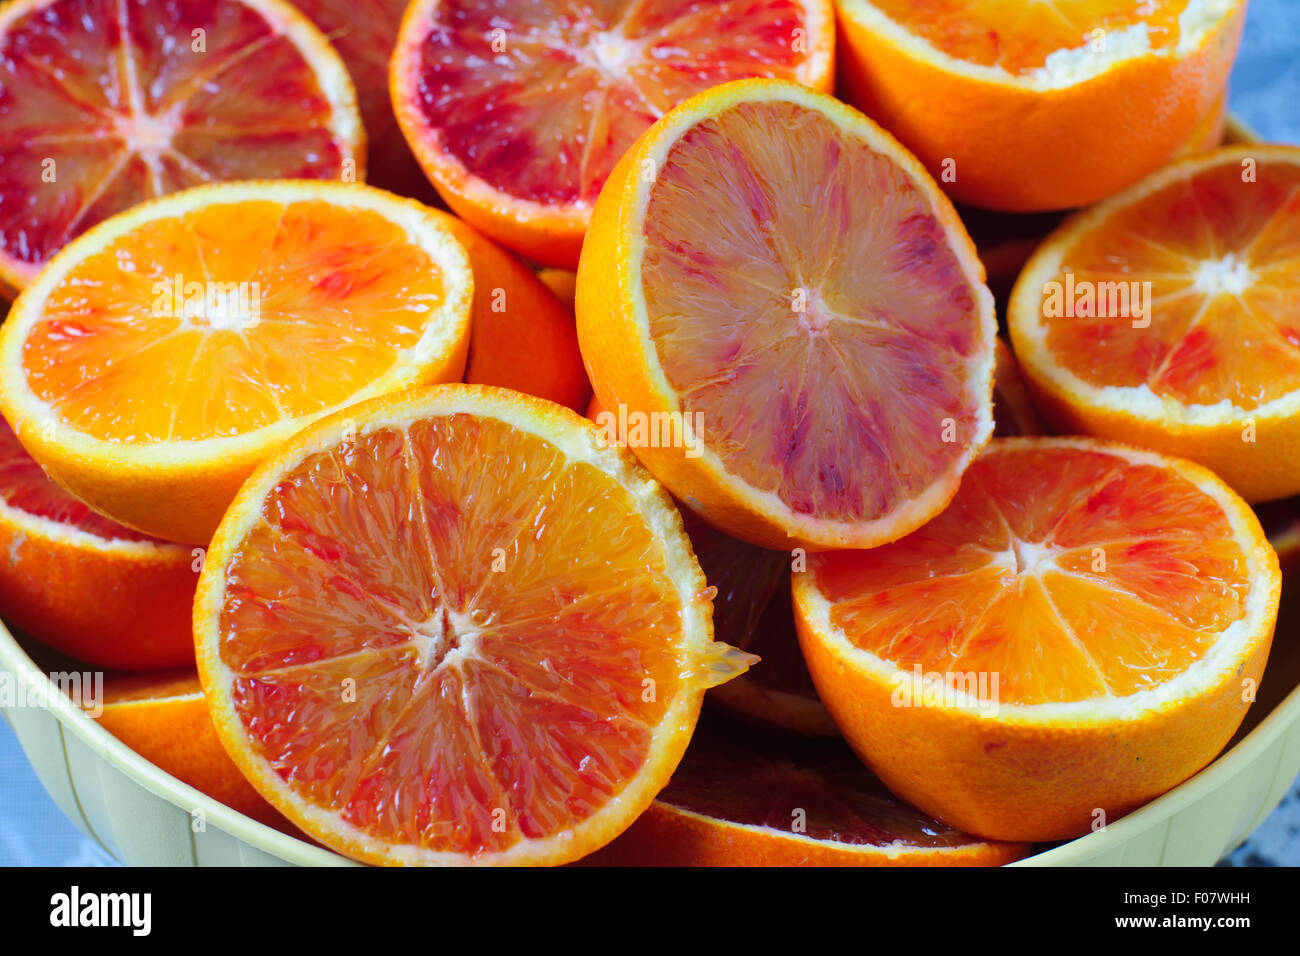 Les oranges siciliennes agrumes siciliens, fond blanc libre Banque D'Images